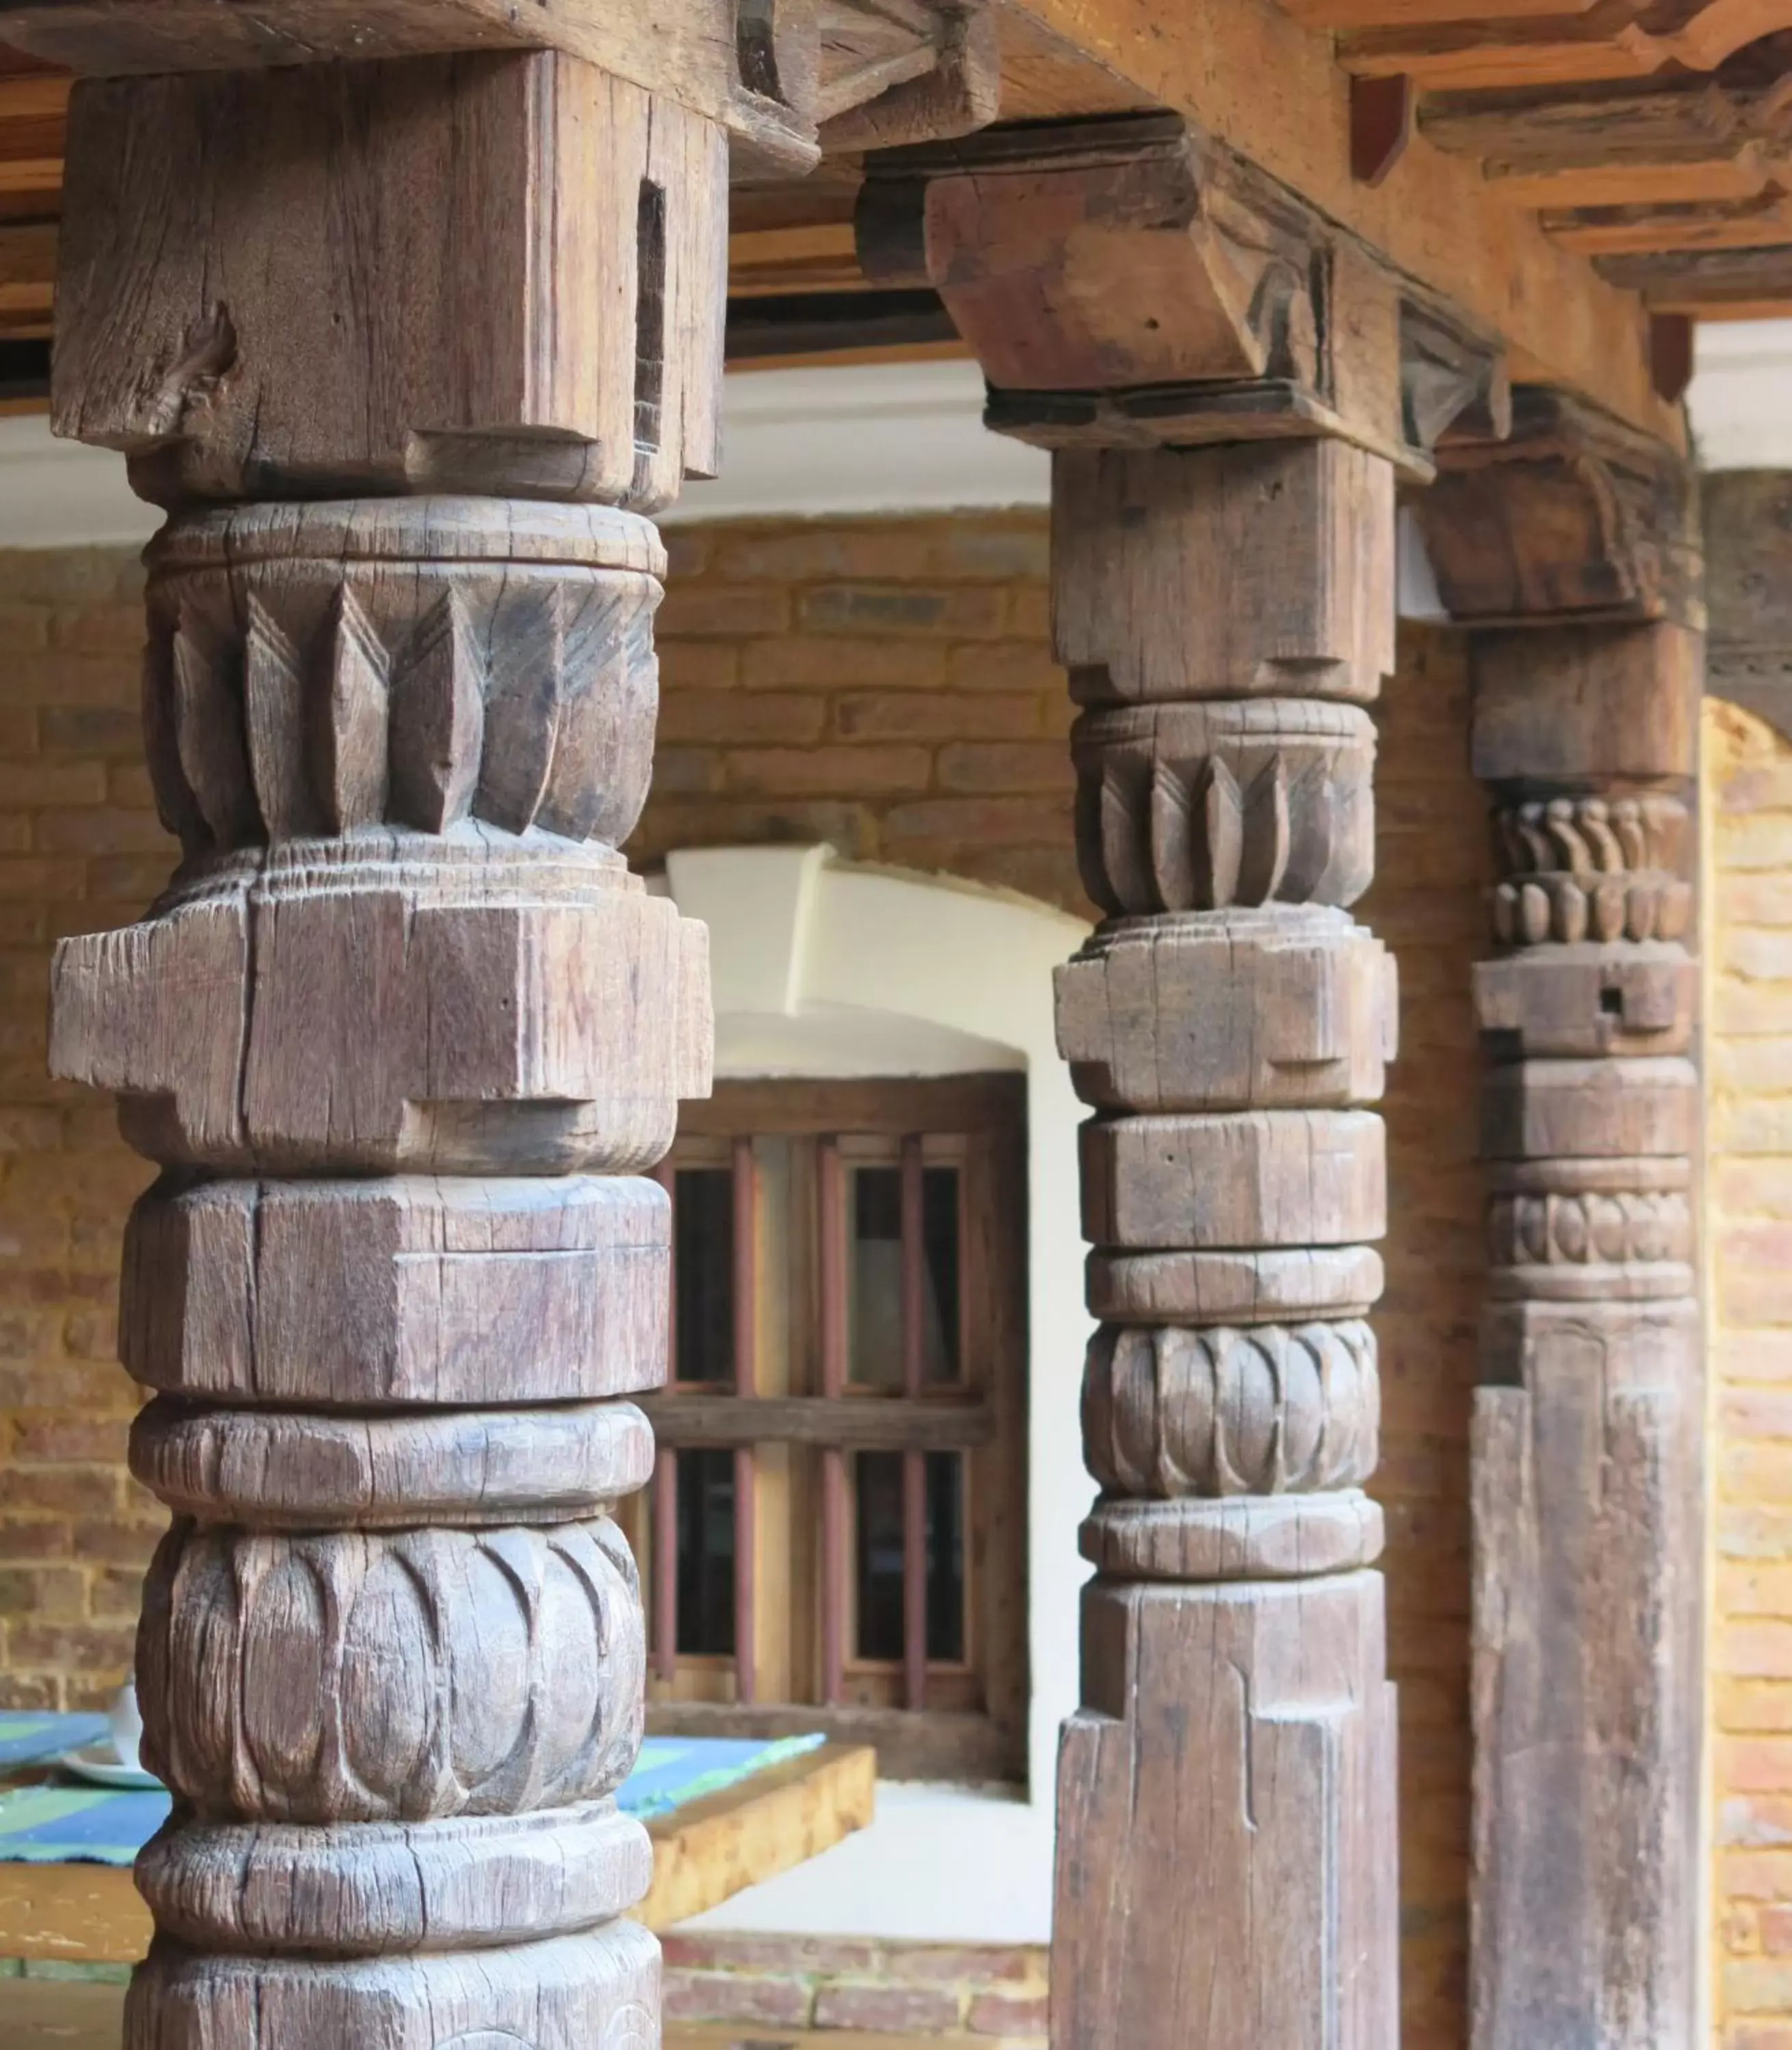 Facade/Entrance in The Inn Patan